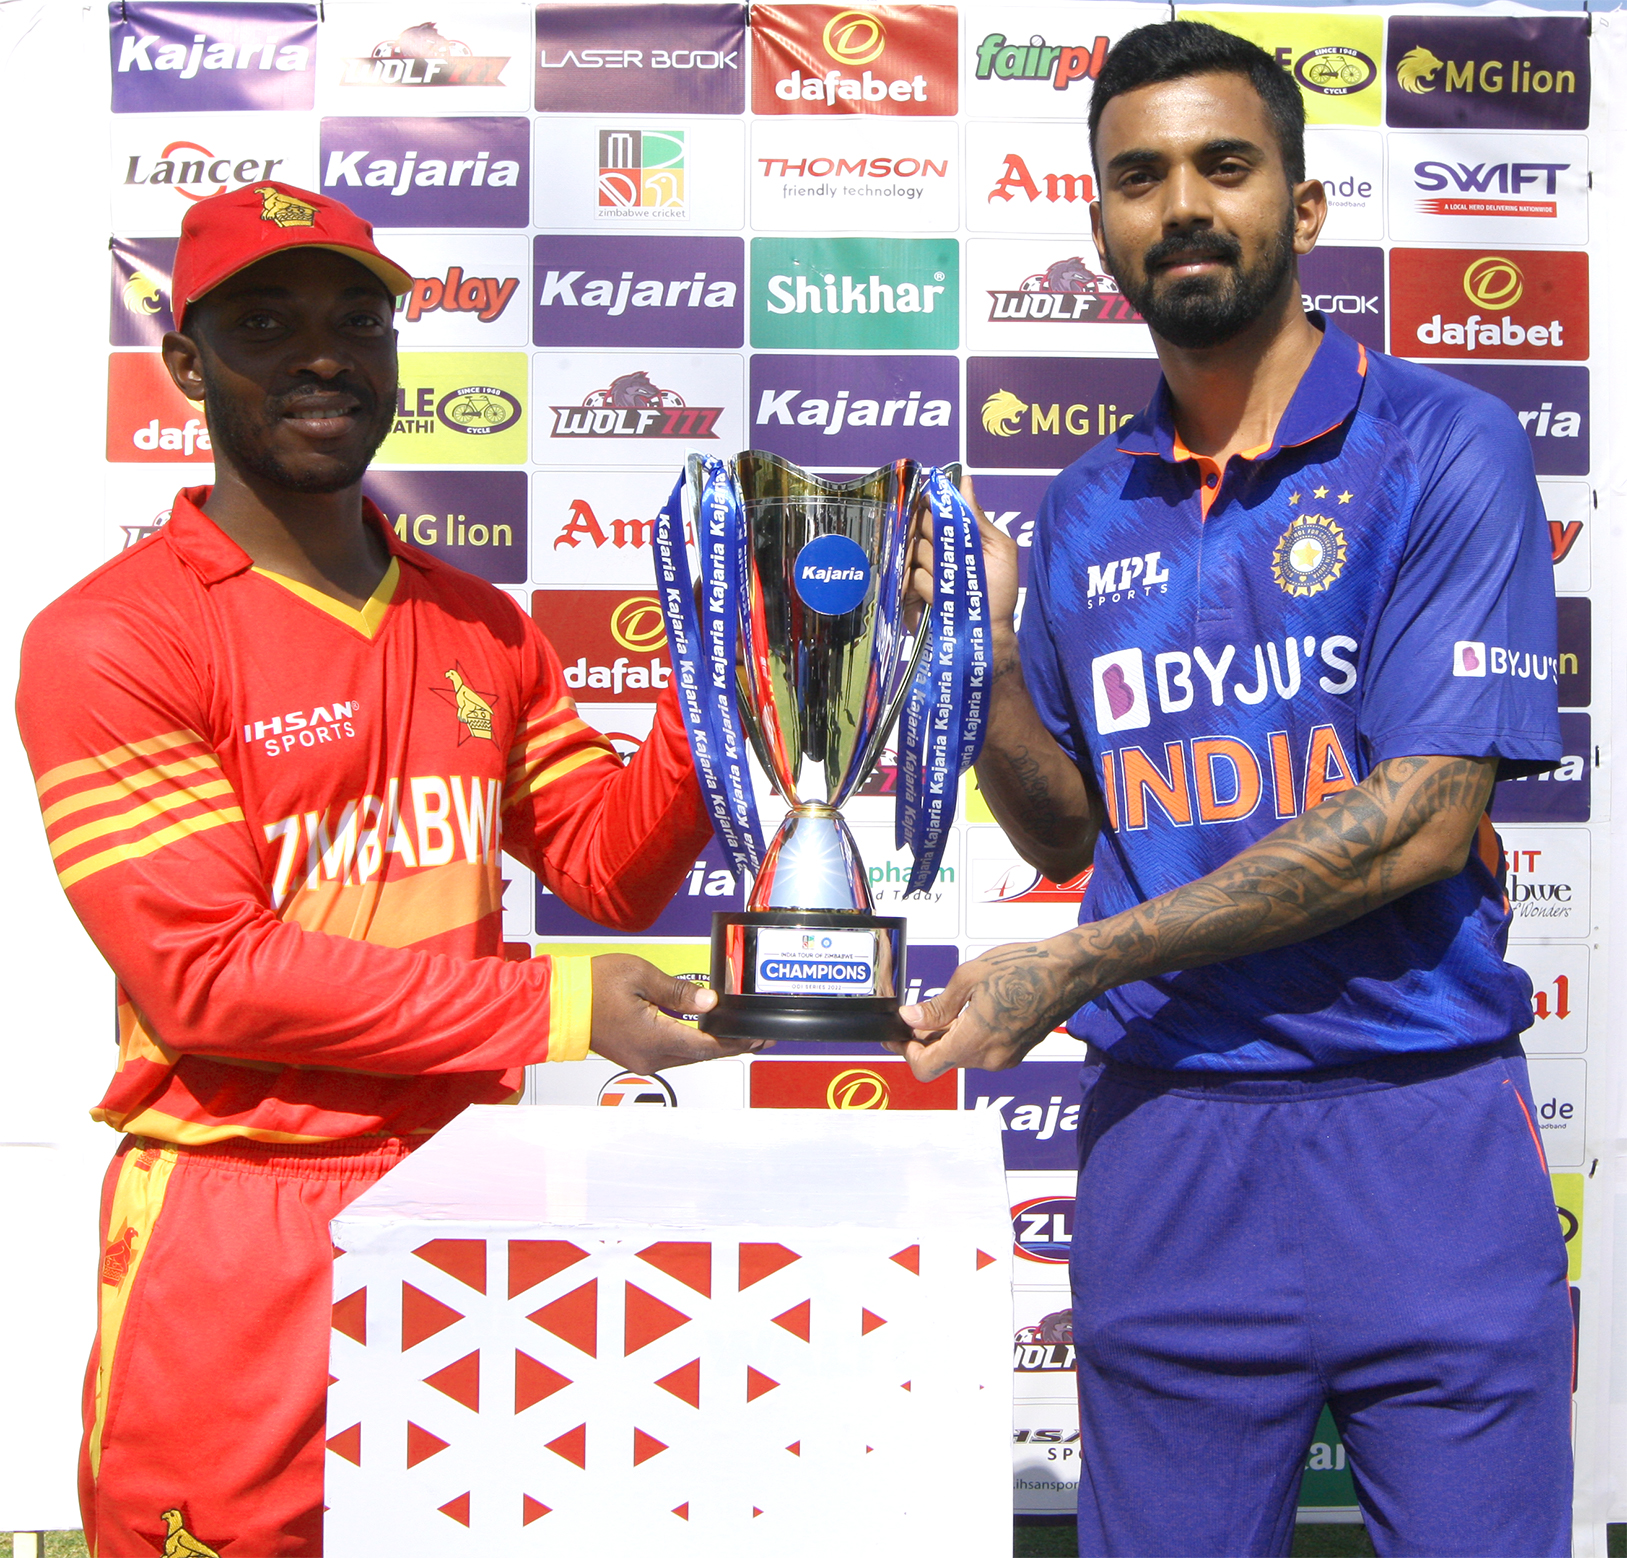 IND vs ZIM: भारत ने जिम्बाब्वे के खिलाफ पहले वनडे में जीता टॉस! पहले गेंदबाज़ी का फैसला, जानें राहुल की कप्तानी में किसे मिला है मौका